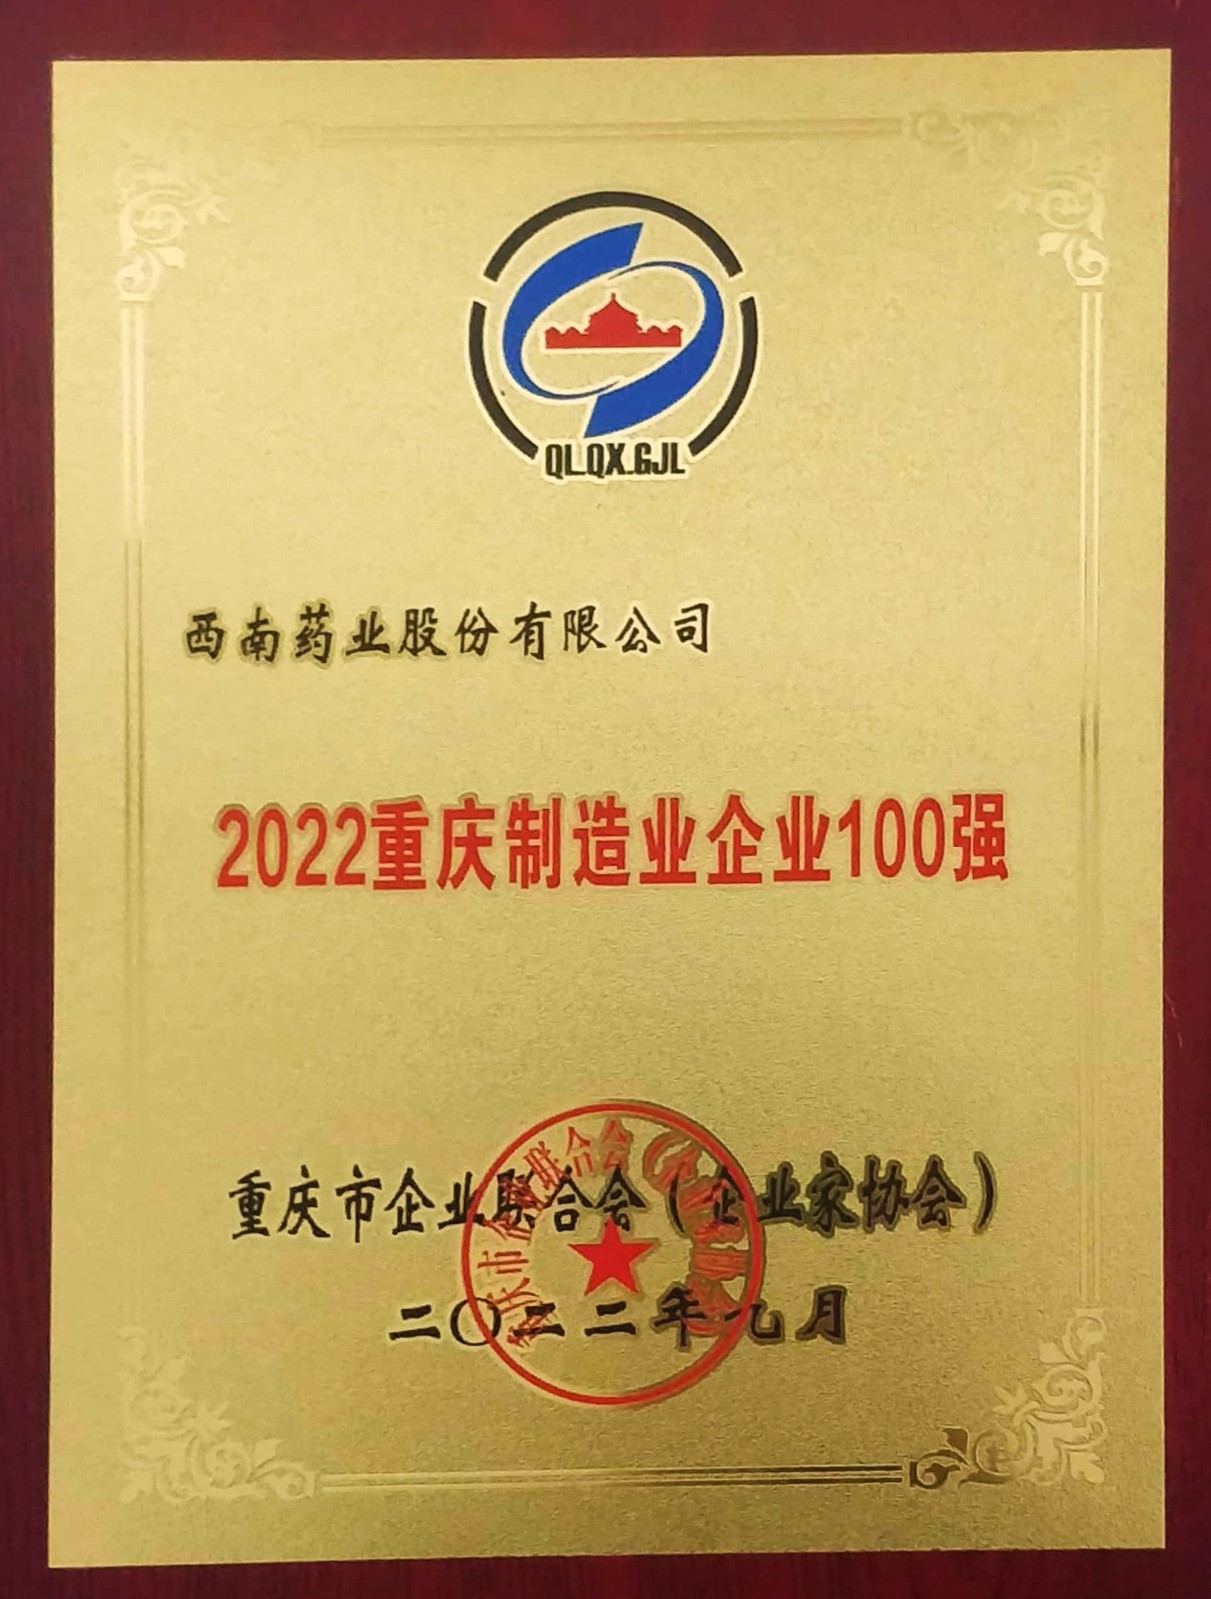 被重庆市企业联合会（企业家协会）授予“2022重庆制造业企业100强”称号.jpg